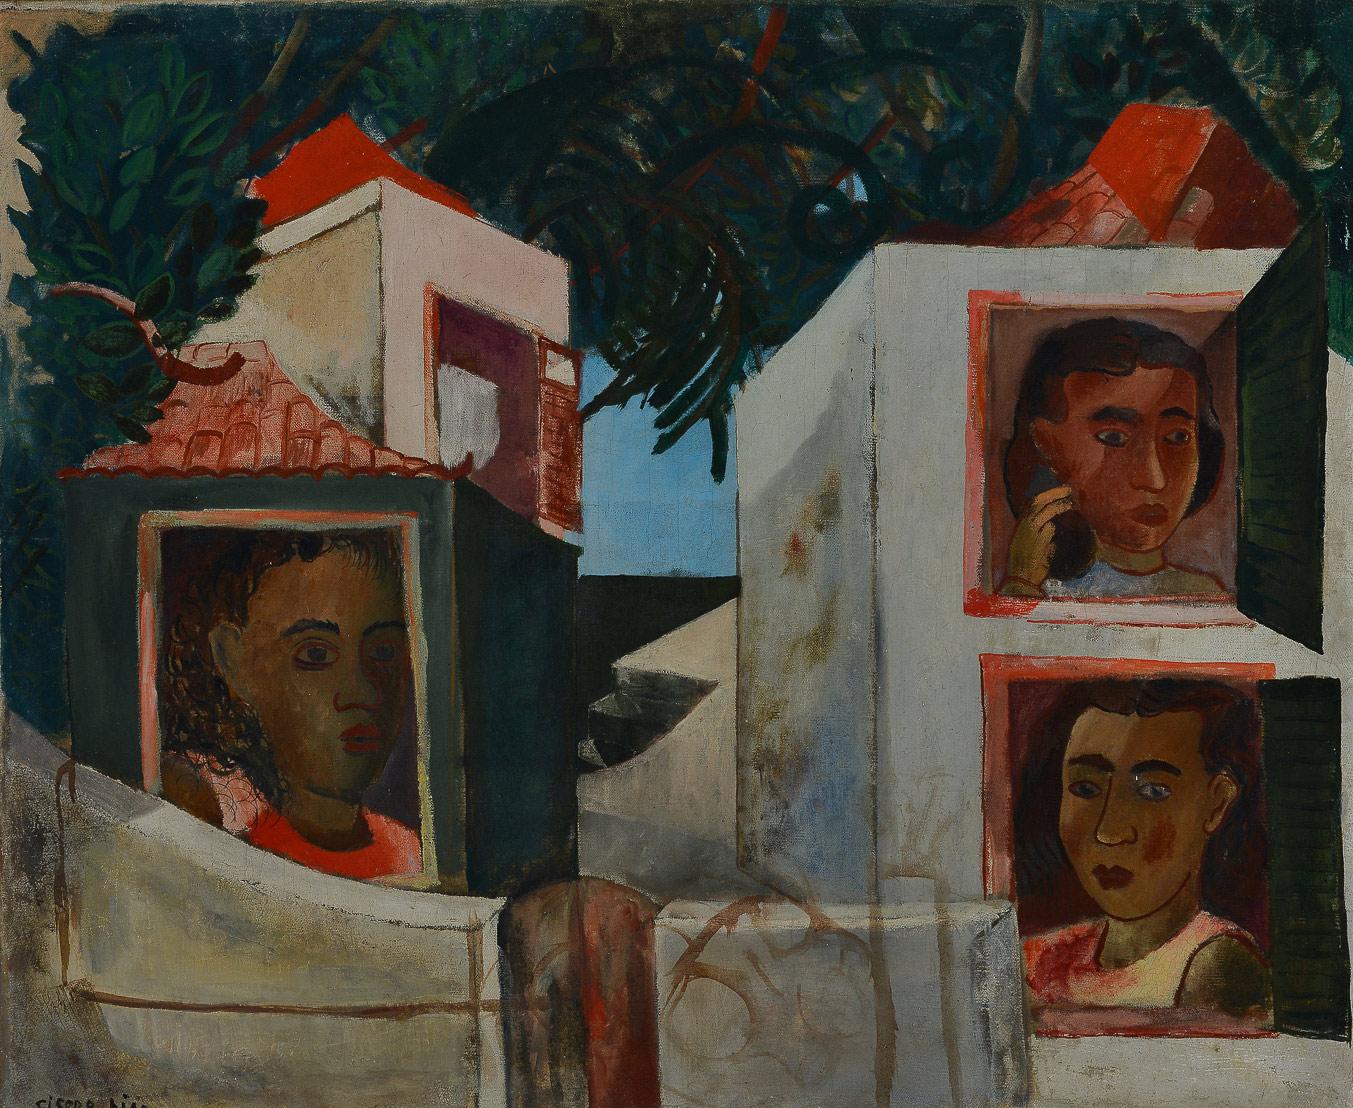 Cícero Dias, Moças na janela, déc. de 1930, óleo sobre tela